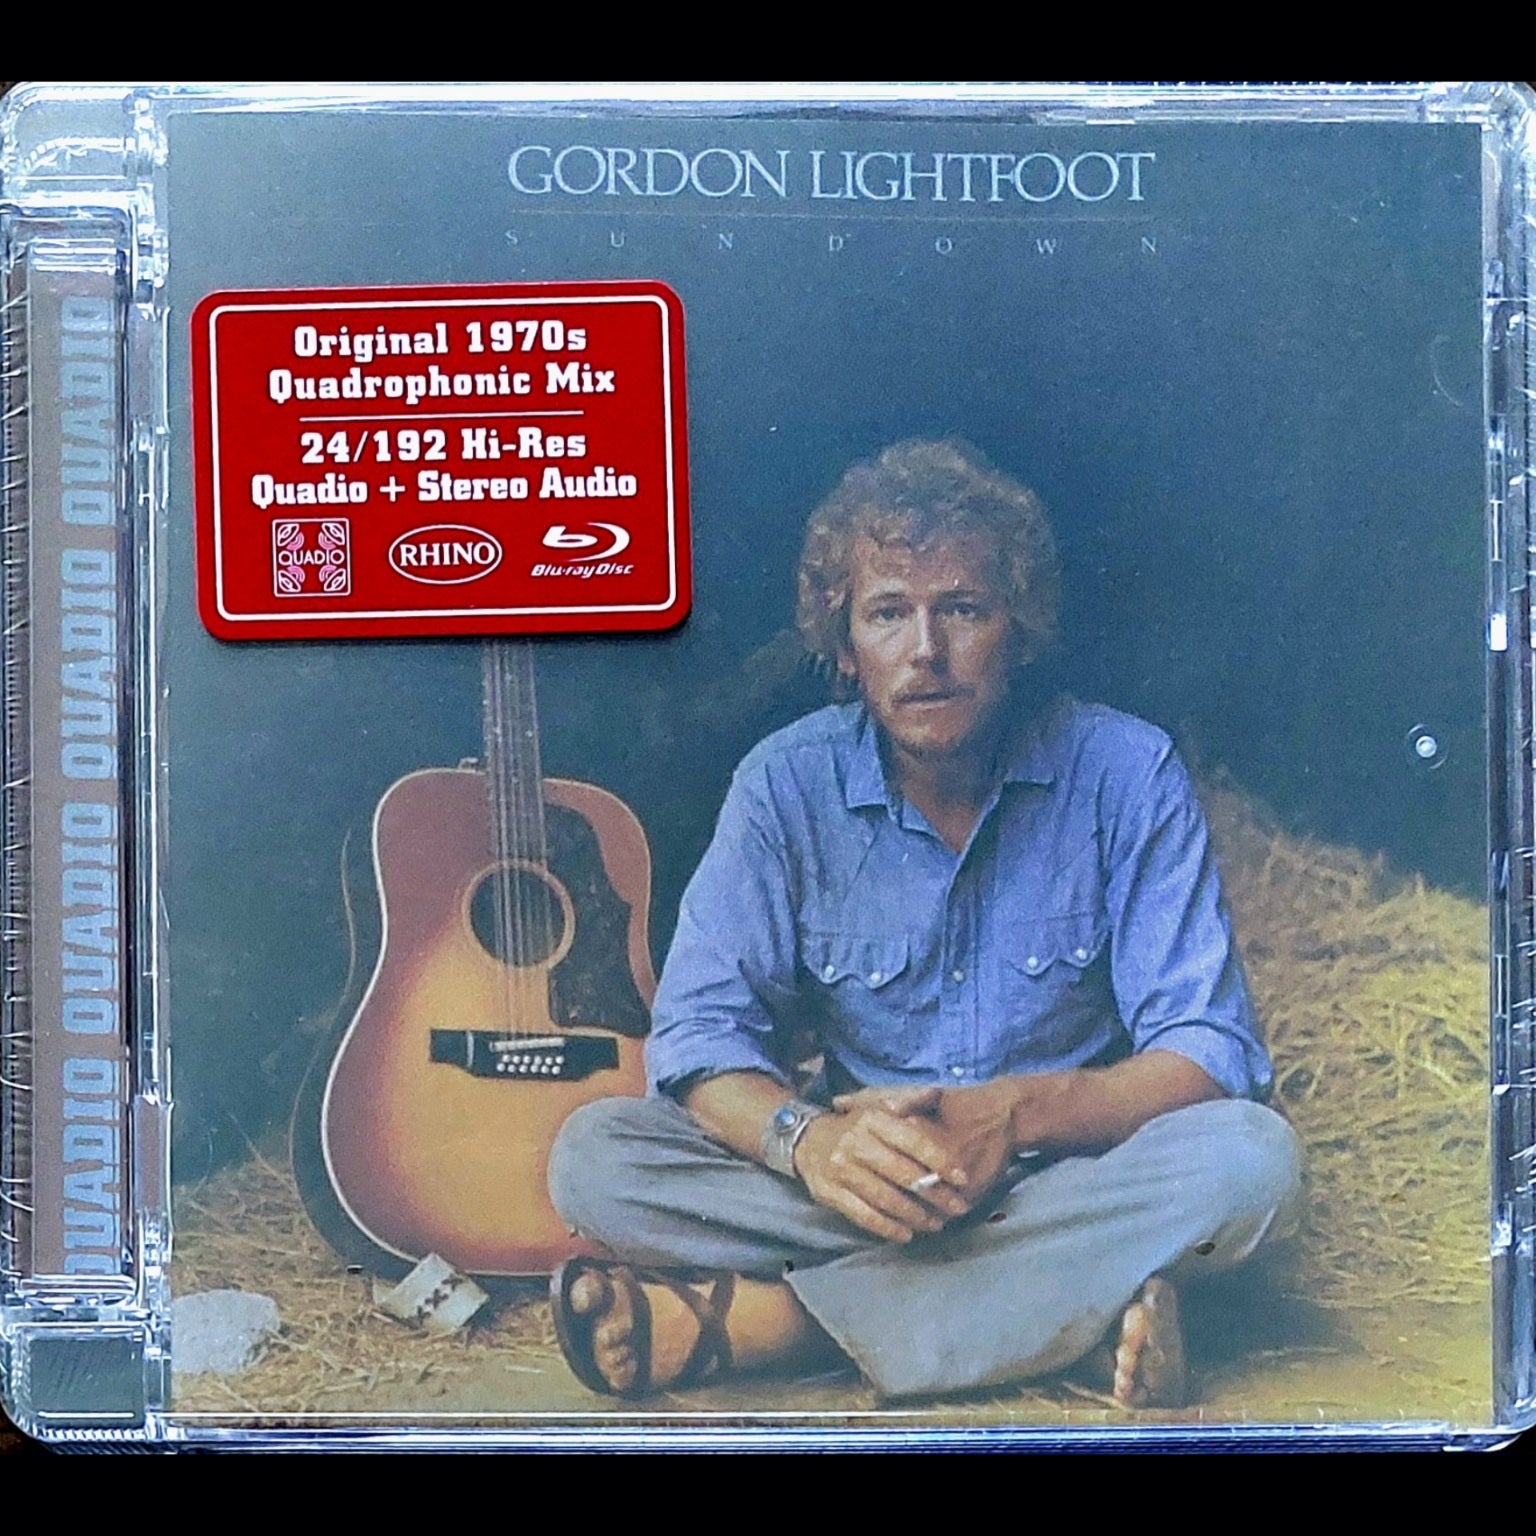 Gordon Lightfoot: Sundown - Quadraphonic Blu-ray Audio - Rhino Quadio ...